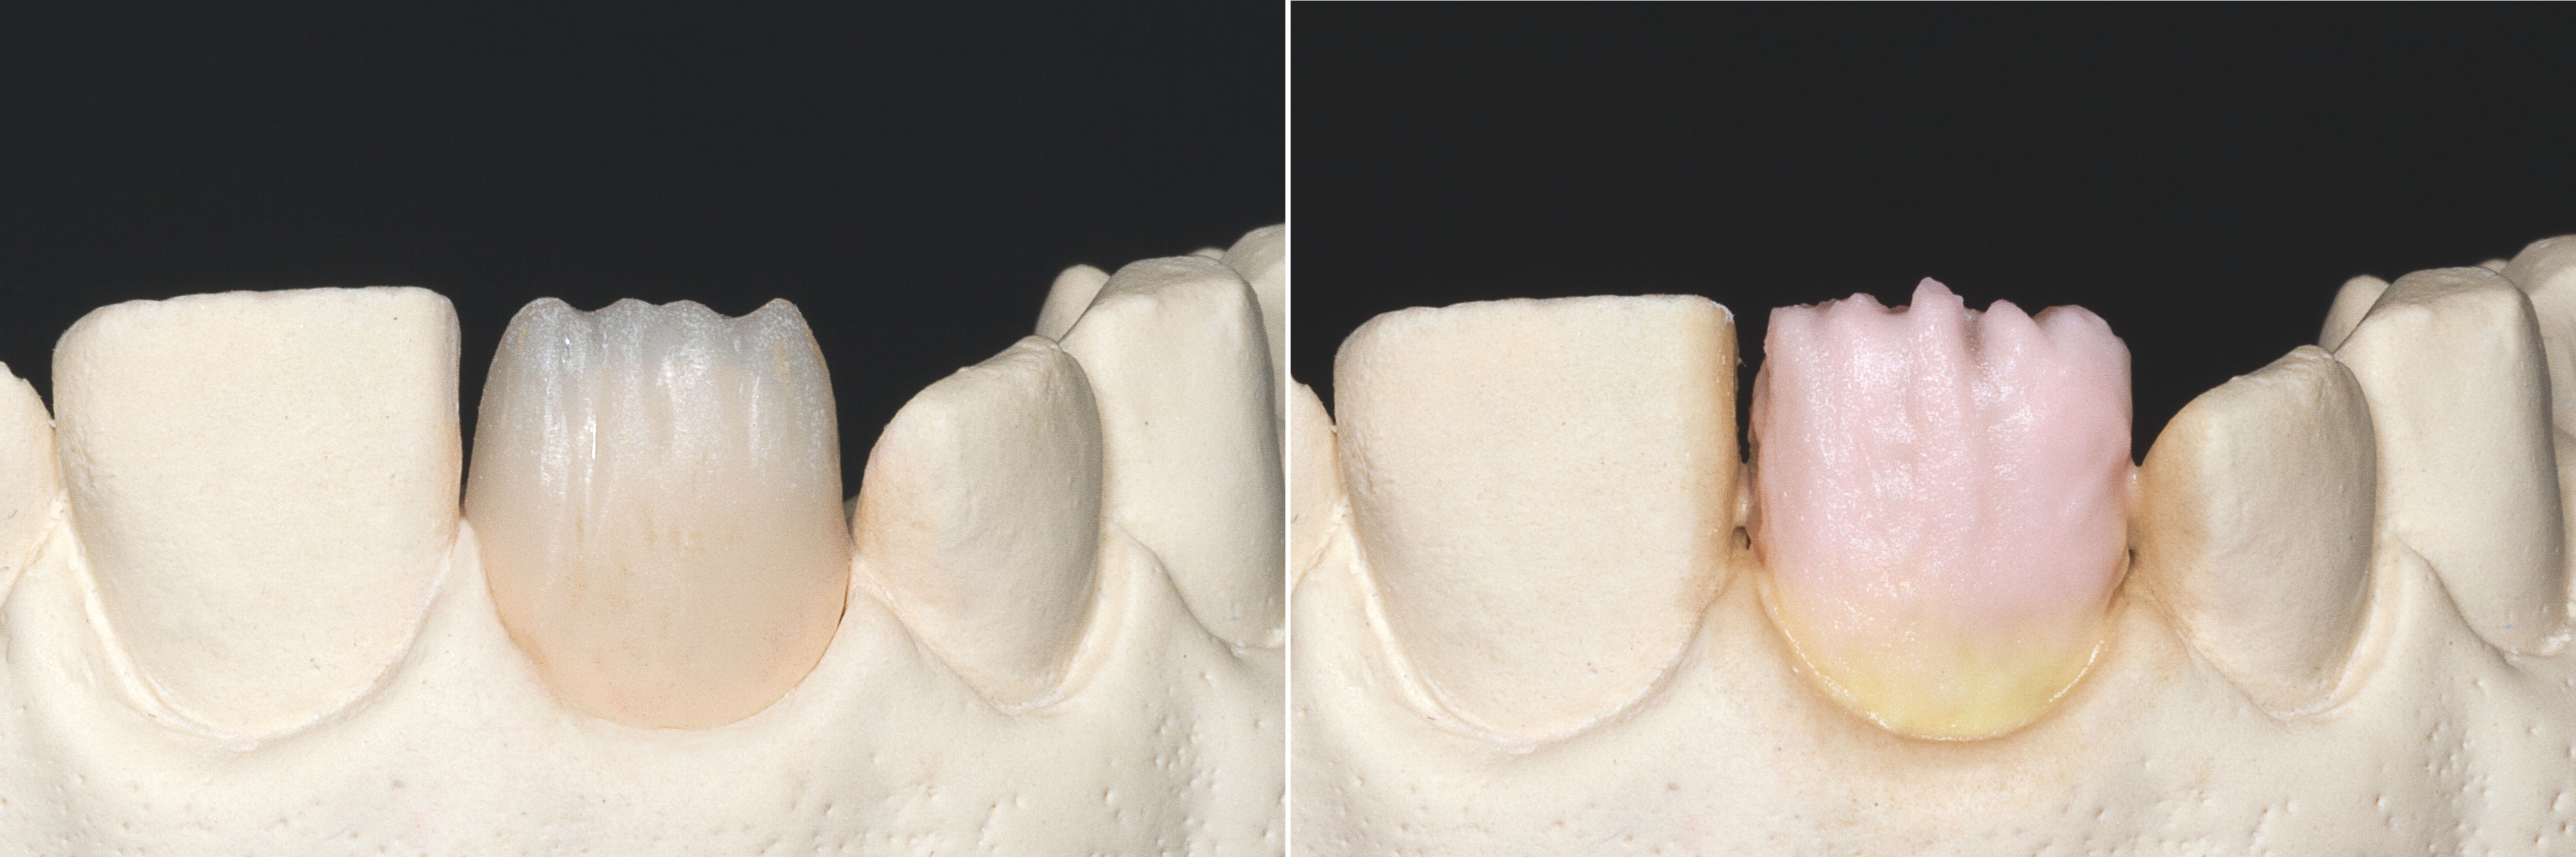 Abb. 1: Inzisal reduzierte Krone.
Abb. 2: Vervollständigung der Zahnform: im Halsbereich durch VITA VM 11 SUN DENTINE und im Körperbereich VITA VM 11 TRANSPA DENTINE in der passenden Zahnfarbe.